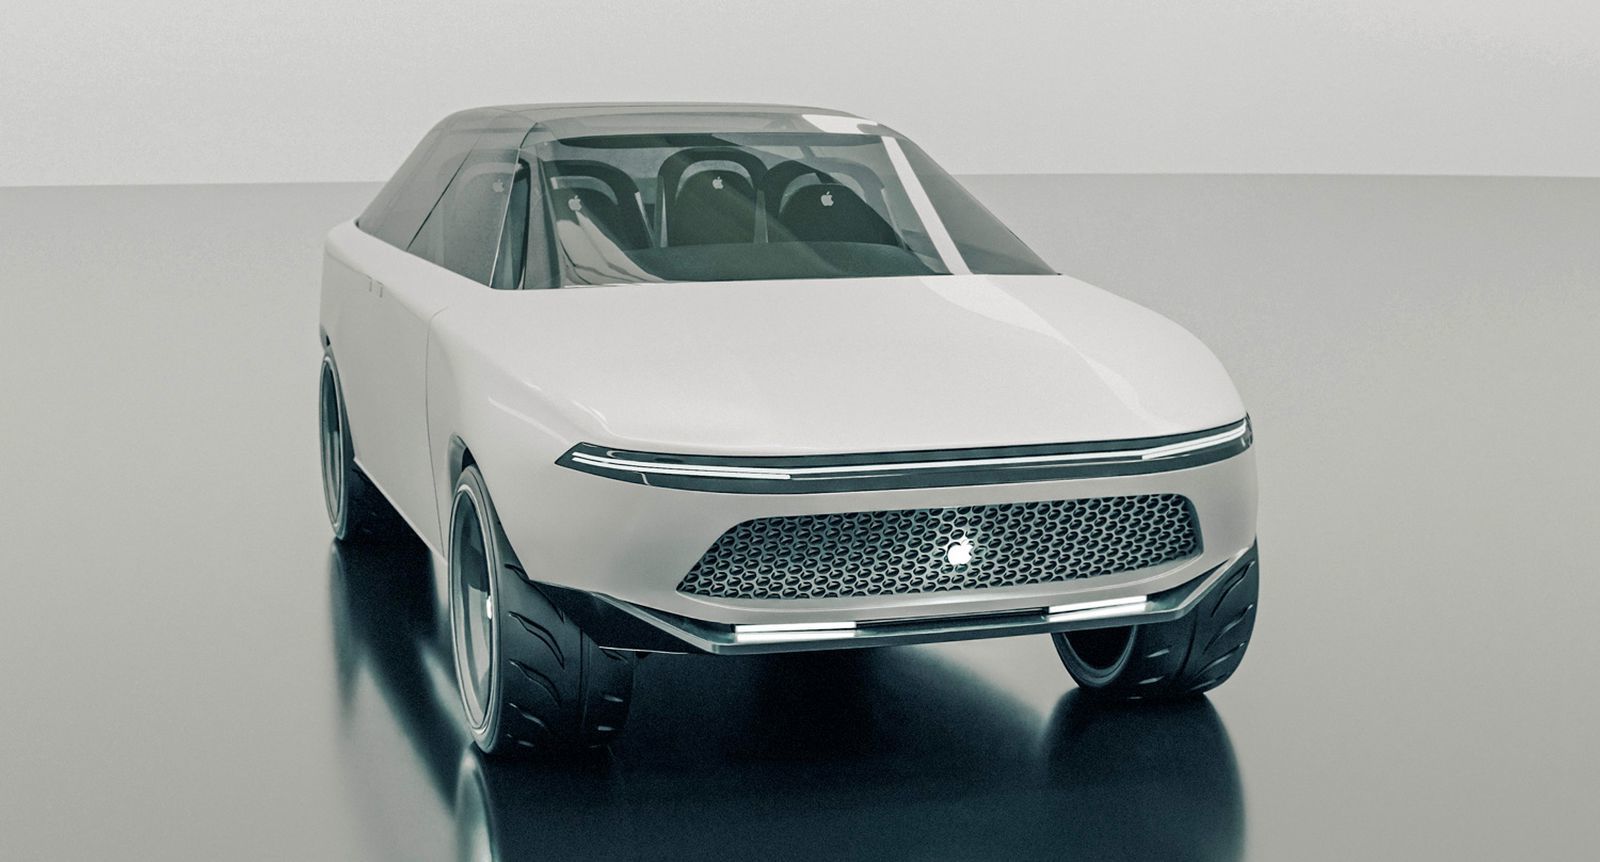 苹果与韩国合作伙伴开发 Apple Car 自动驾驶功能